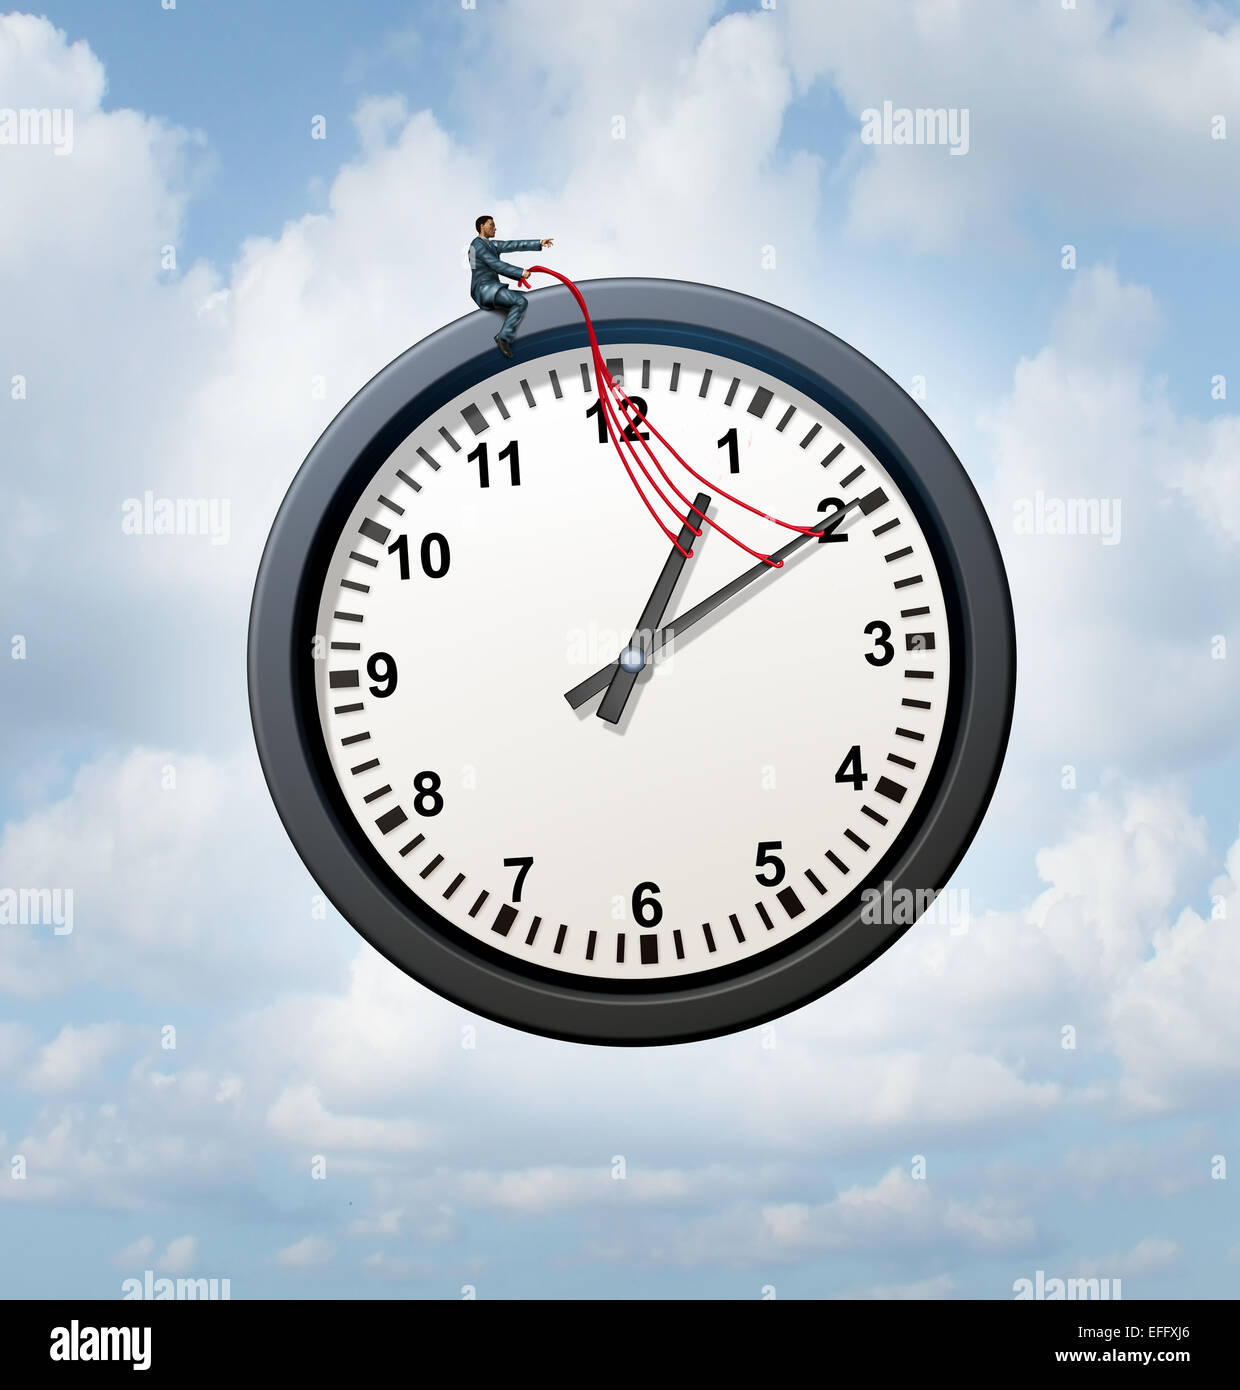 Controlar el concepto de tiempo y hacerse cargo de su negocio símbolo de programación como empresario proporcionar orientación a una metáfora del reloj volando en el cielo. Foto de stock